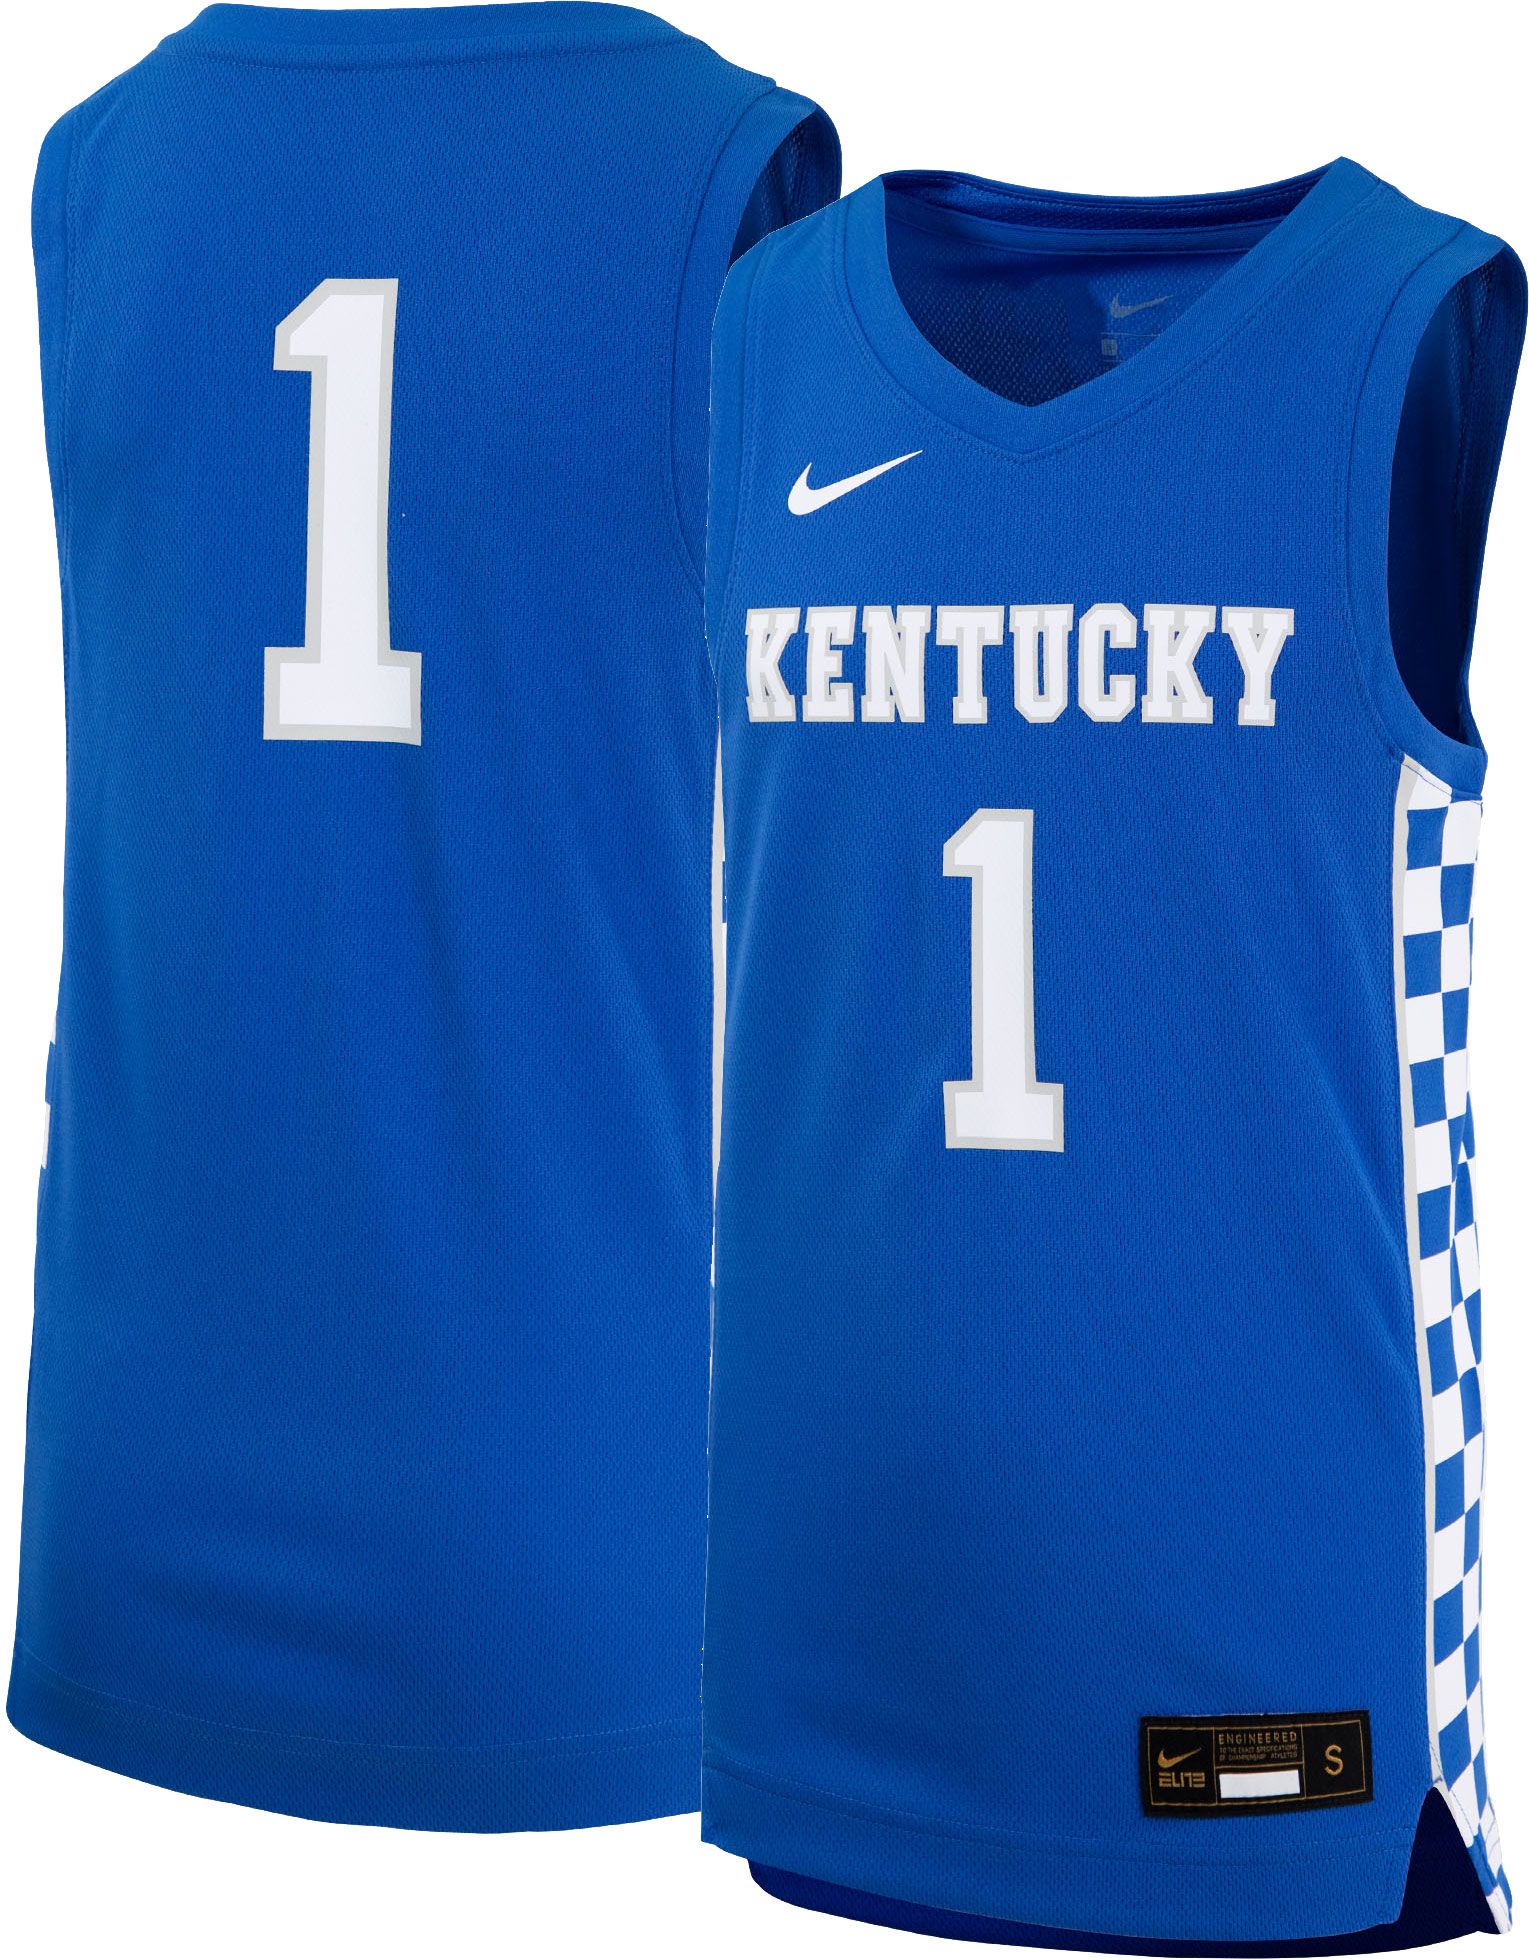 kentucky wildcats jersey